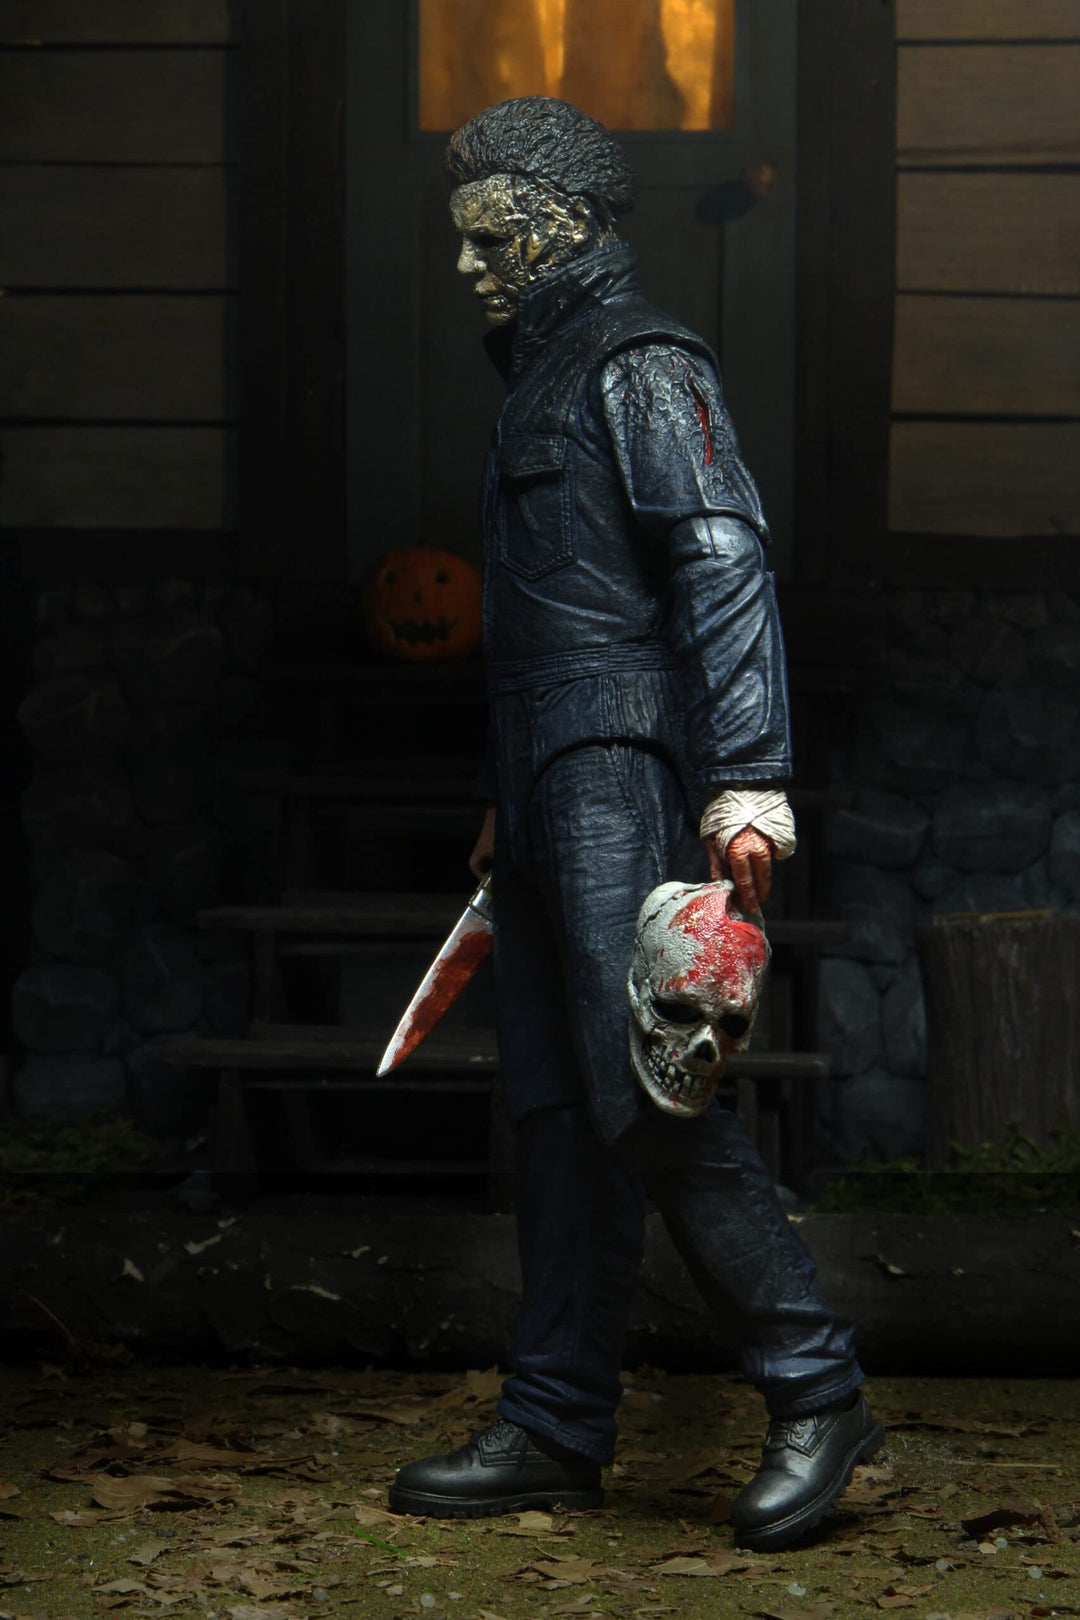 Neka Halloween Kills Ultimate 7 Inch Action Figure, Michael Myers